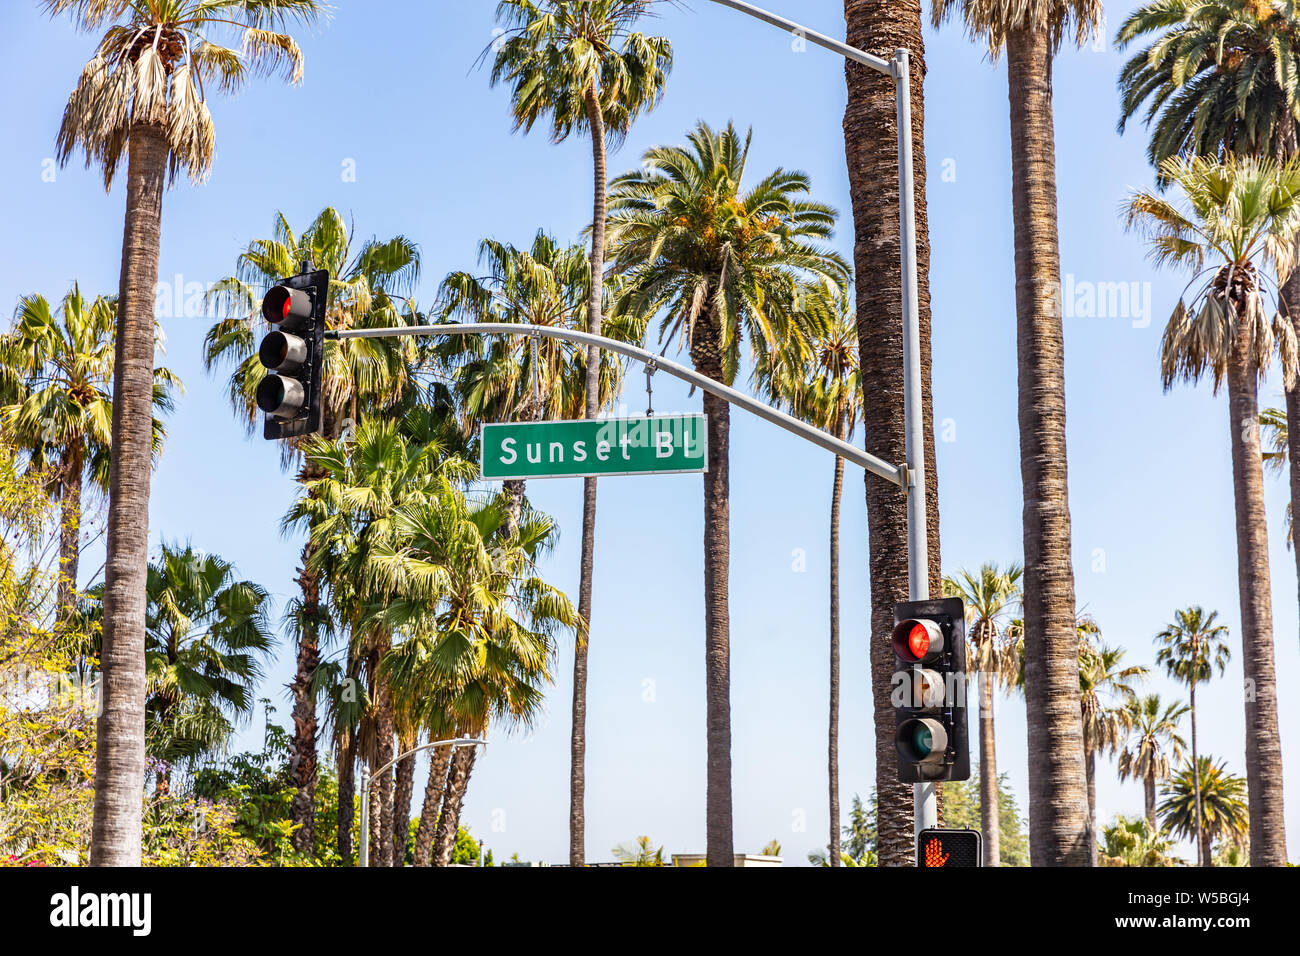 Sunset Bl. Los Ángeles, California, Estados Unidos. Texto de señal verde, los semáforos, las palmeras y el cielo azul de fondo. Jornada soleada de primavera. Foto de stock